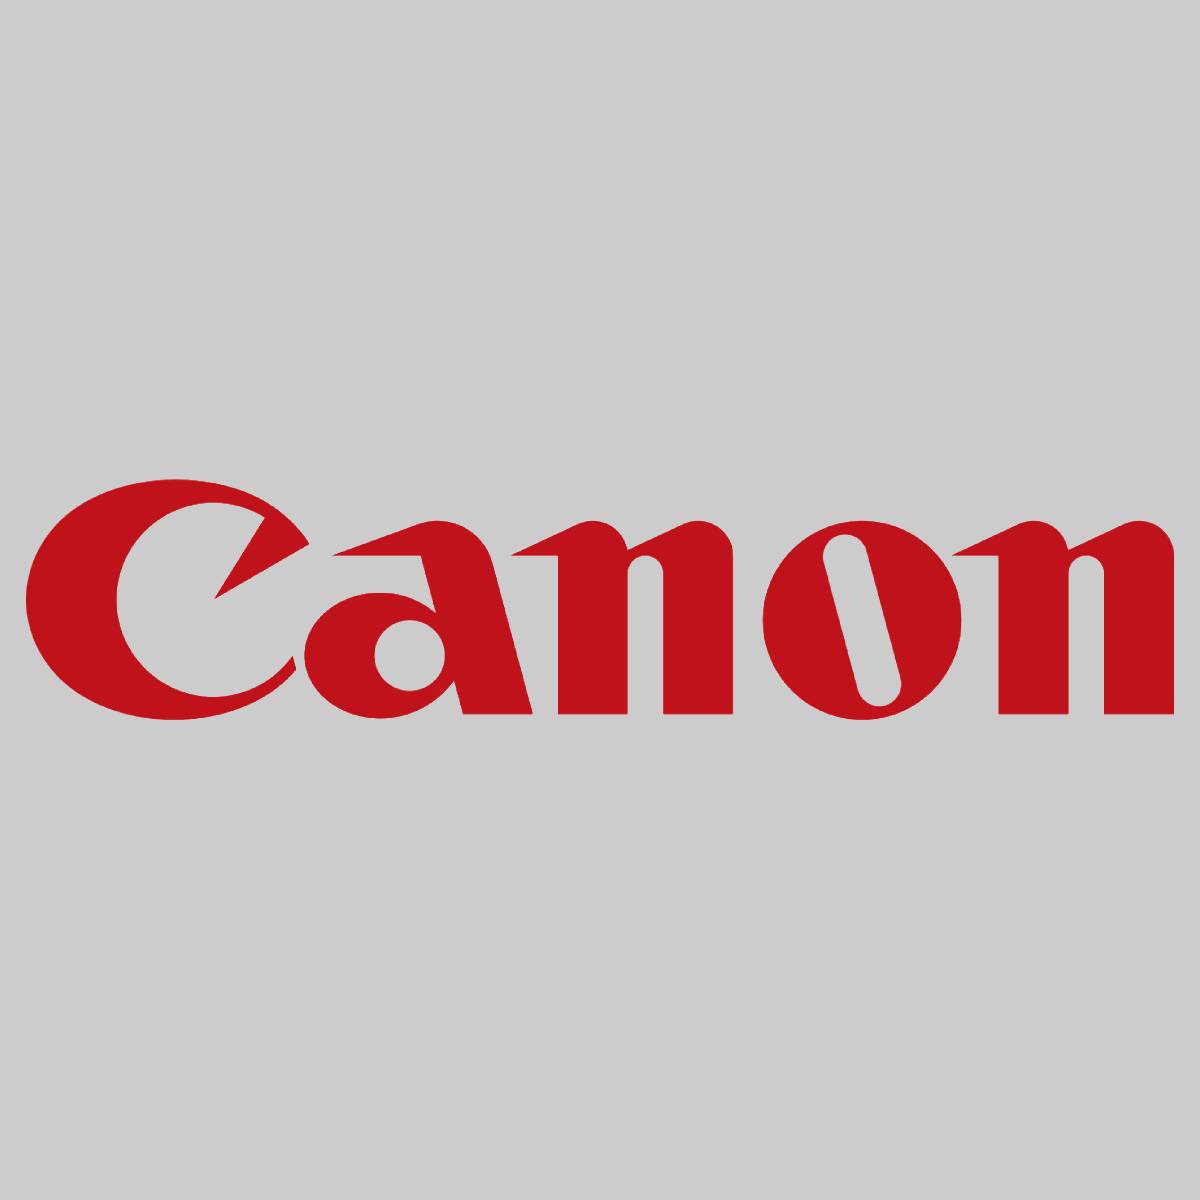 "Original Canon Duplexing Feeder Roller FC6-4019-000 for iR C2550 C2880 C3080 C3 